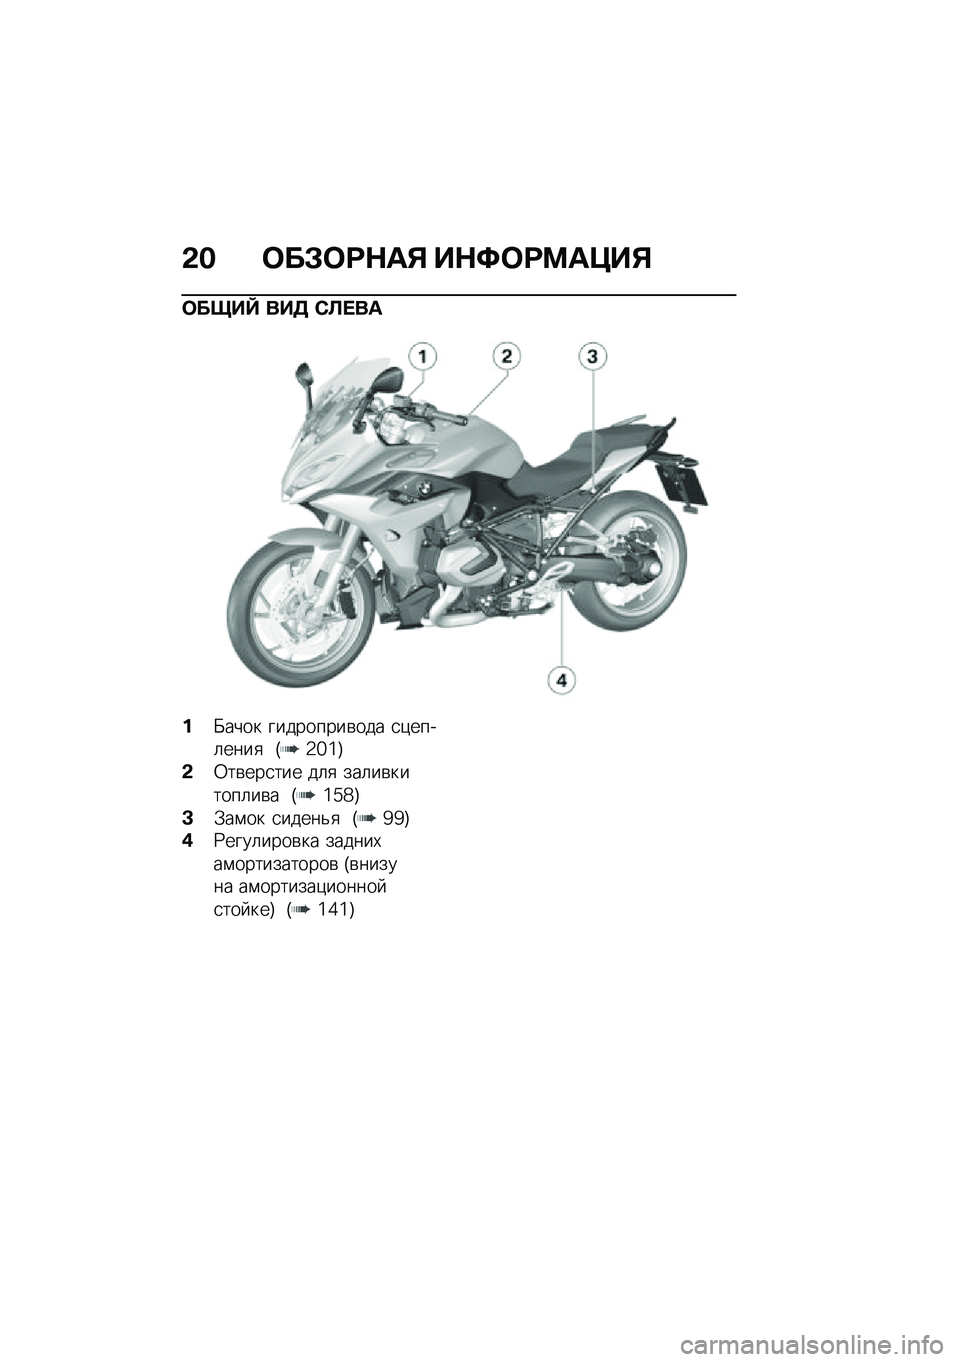 BMW MOTORRAD R 1250 RS 2020  Руководство по эксплуатации (in Russian) �&� �	��#�	�=�$��% ��$�>�	�=�?��@��%
�	����` ���5 �*�C� ��
��L���� ���������\b��� �
�)����	����
 �H�`�a�d�I
�&�0��\b���
��� ��	�
 ���	��\b������	��\b